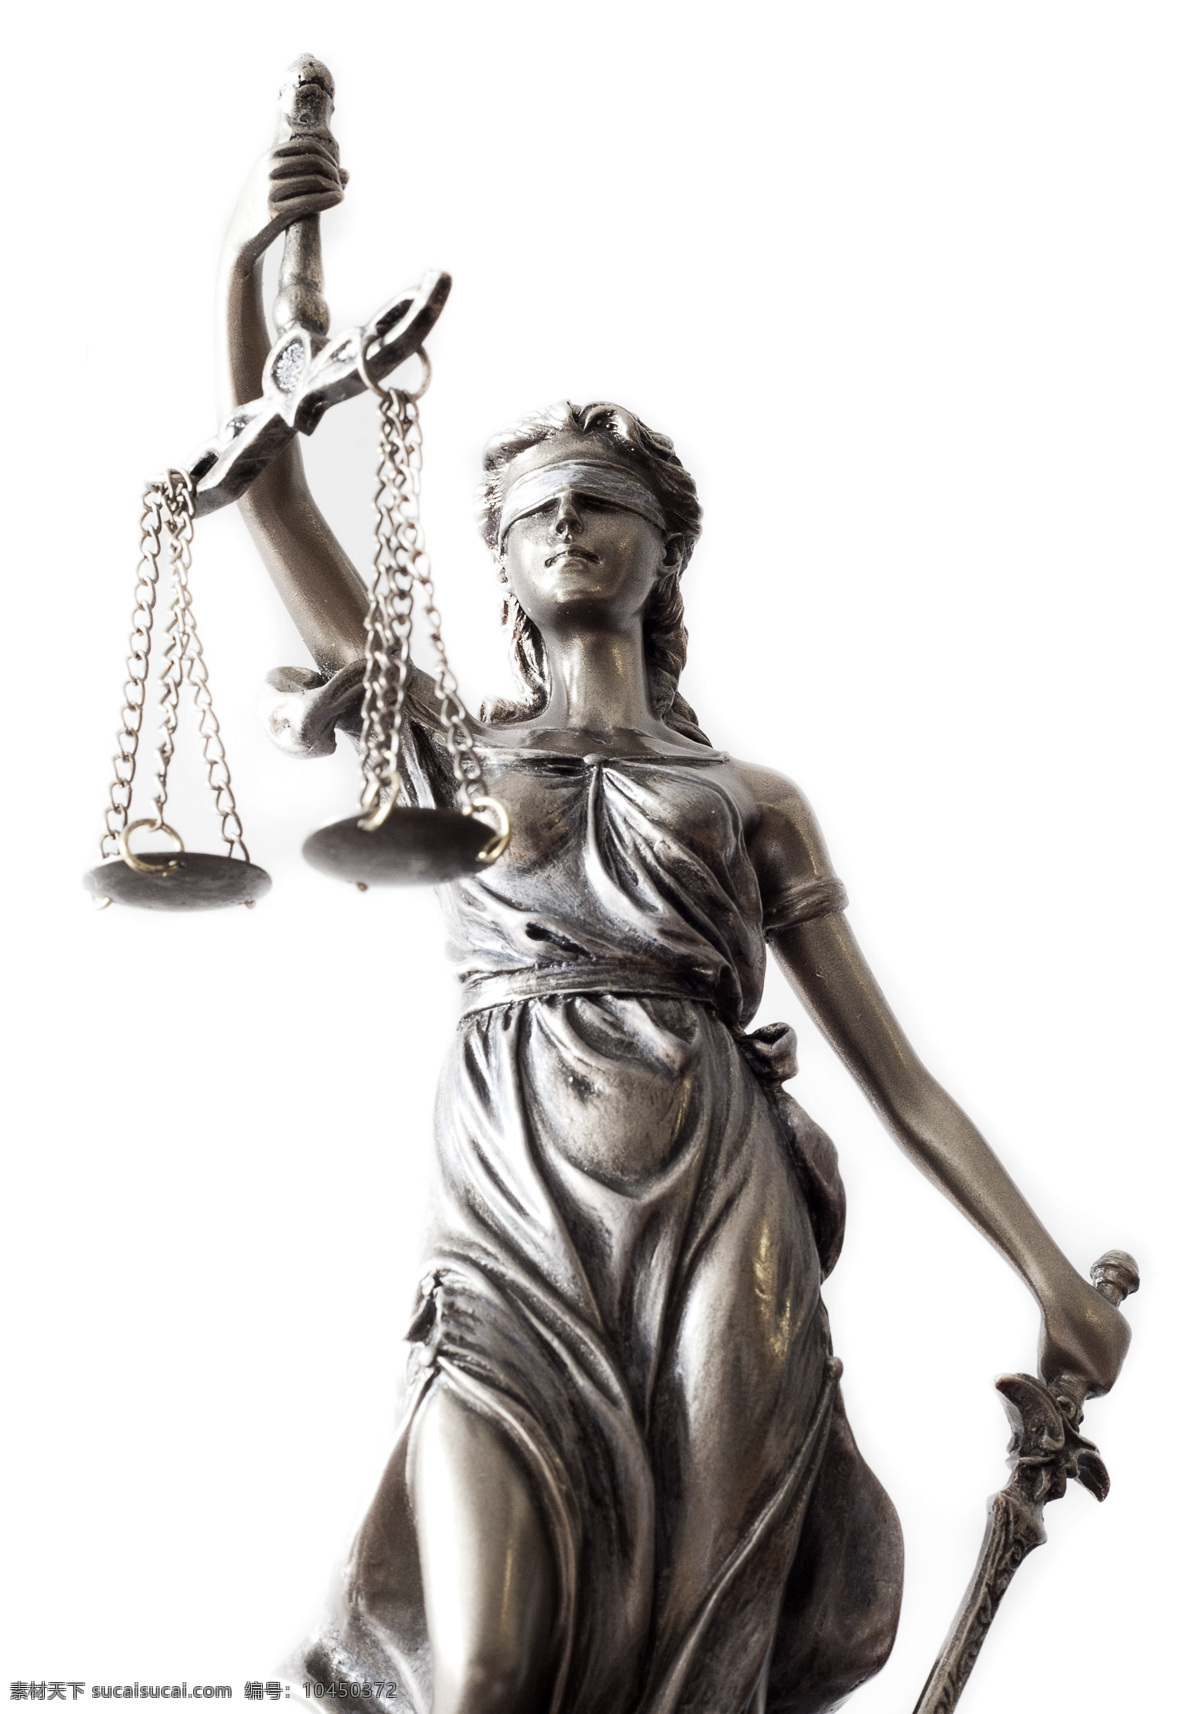 天平和法律 法槌 法庭 法律 天平 司法素材 追槌 法律书本 公平 正义 生活百科 学习办公 生活素材